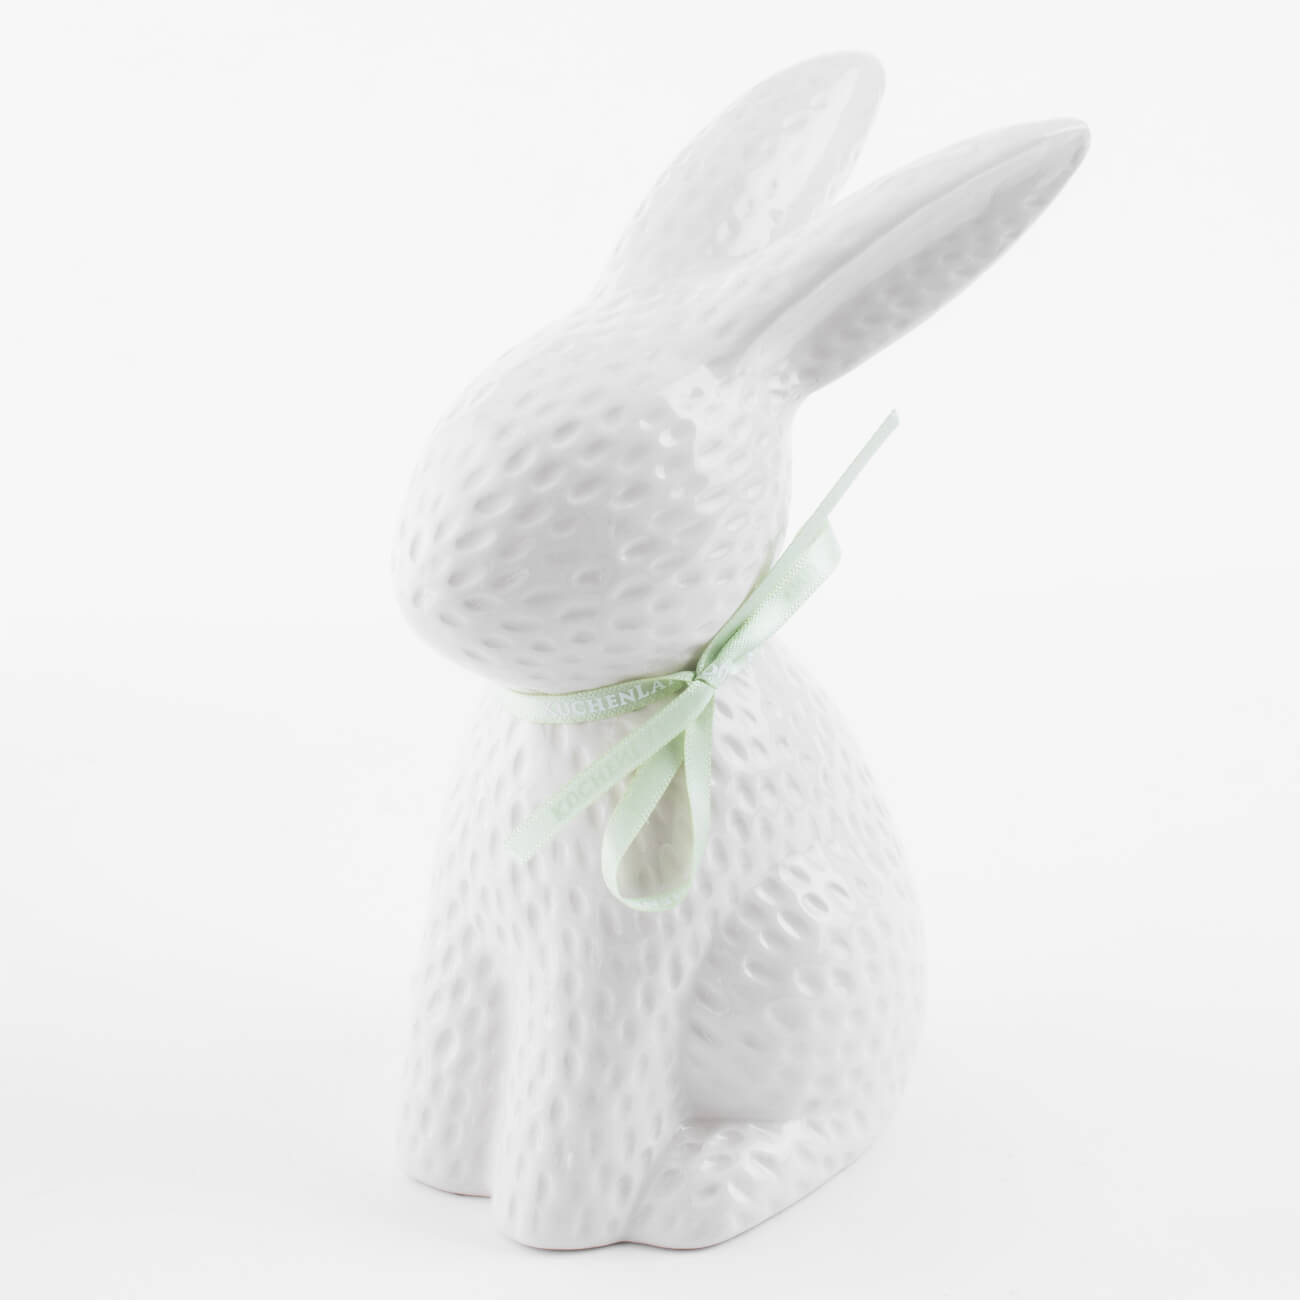 статуэтка 18 см керамика молочная кролик сидит easter blooming Статуэтка, 18 см, керамика, молочная Кролик сидит, Easter blooming